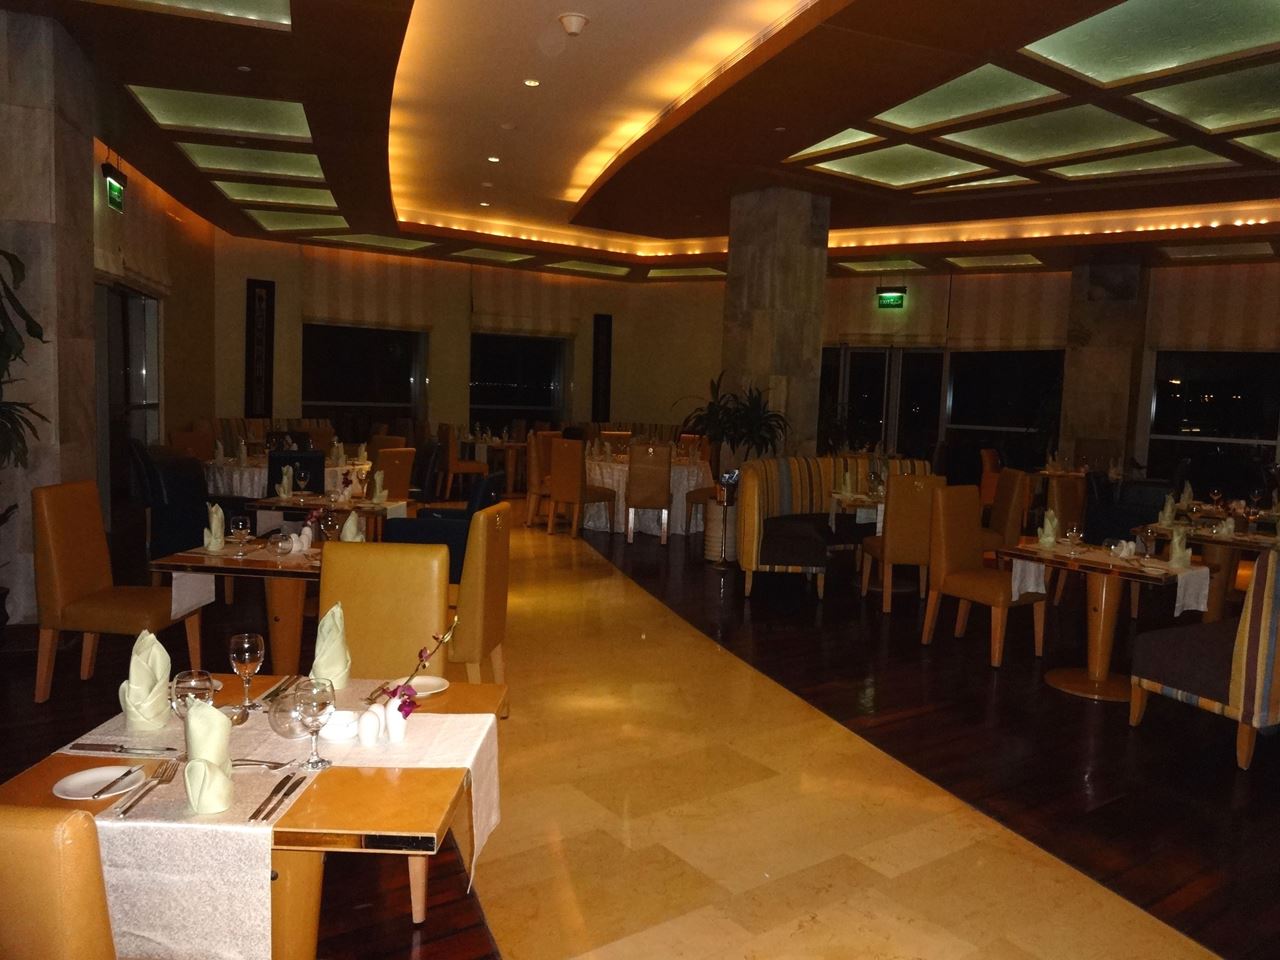 Buffet Dinner at Atlantis Restaurant in Marina Hotel